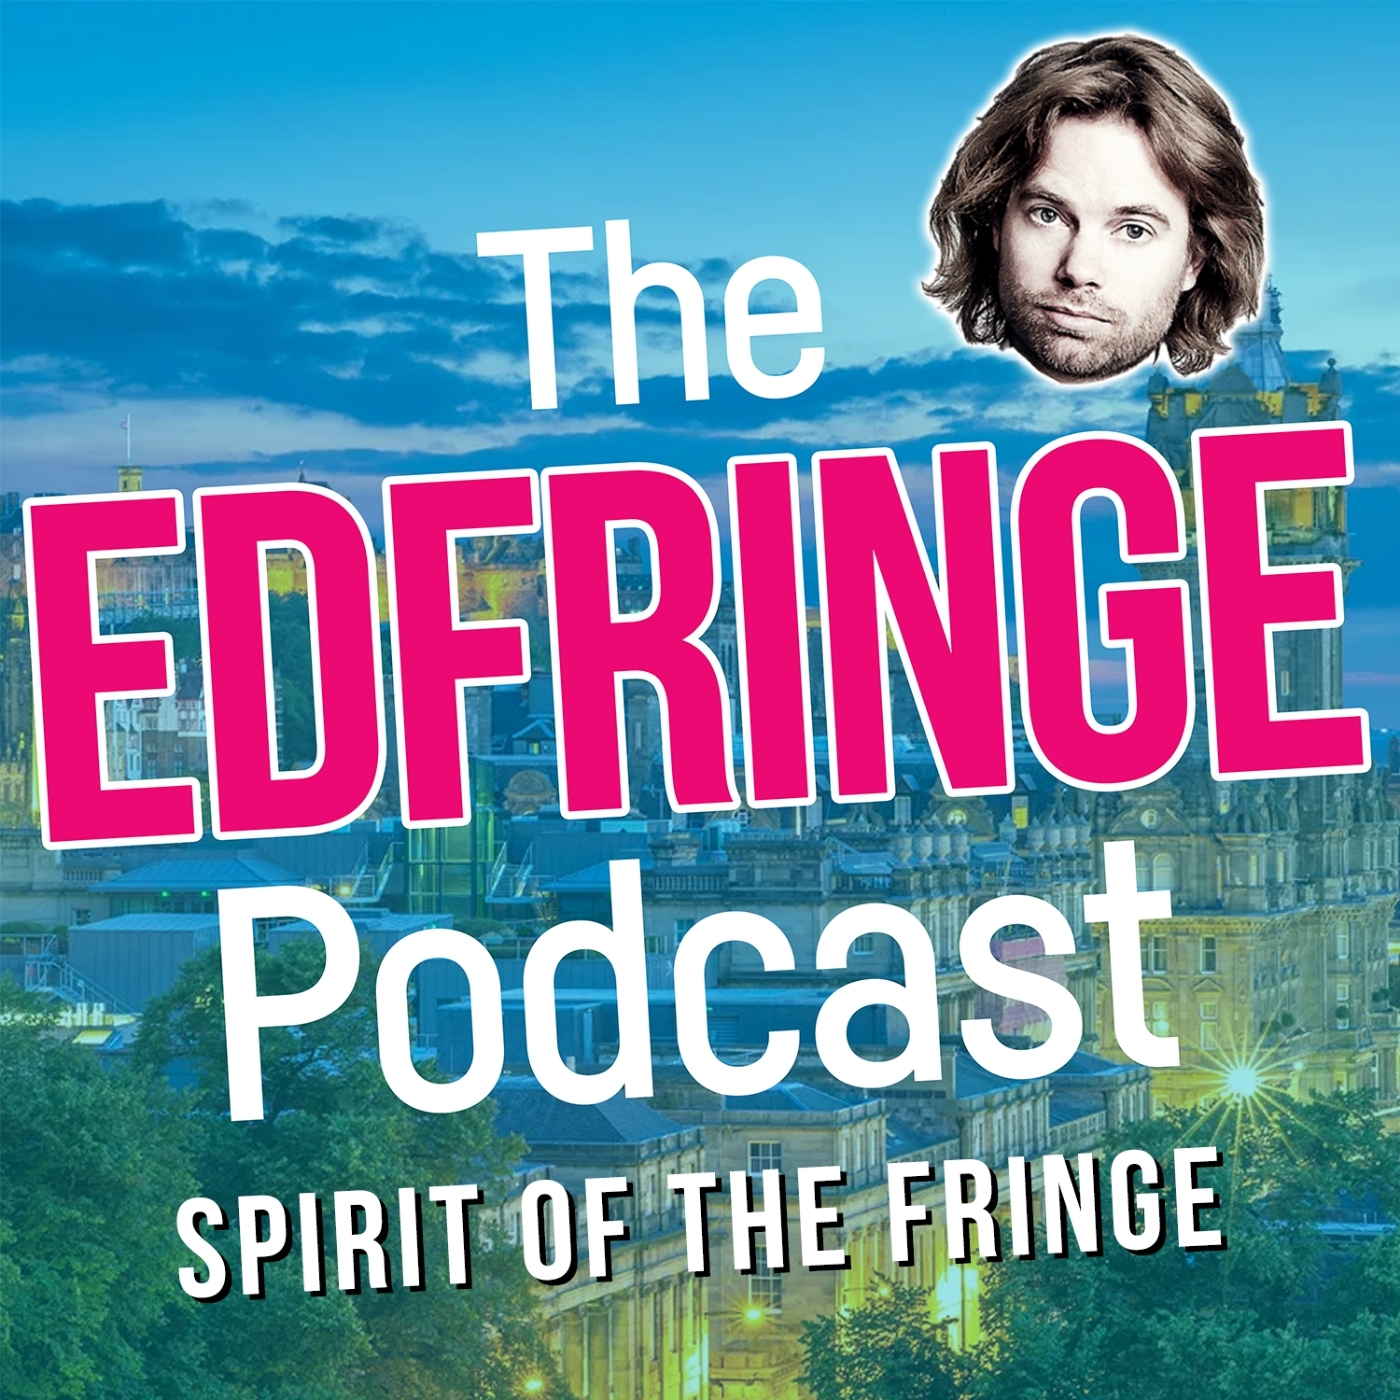 The Spirit Of The Fringe